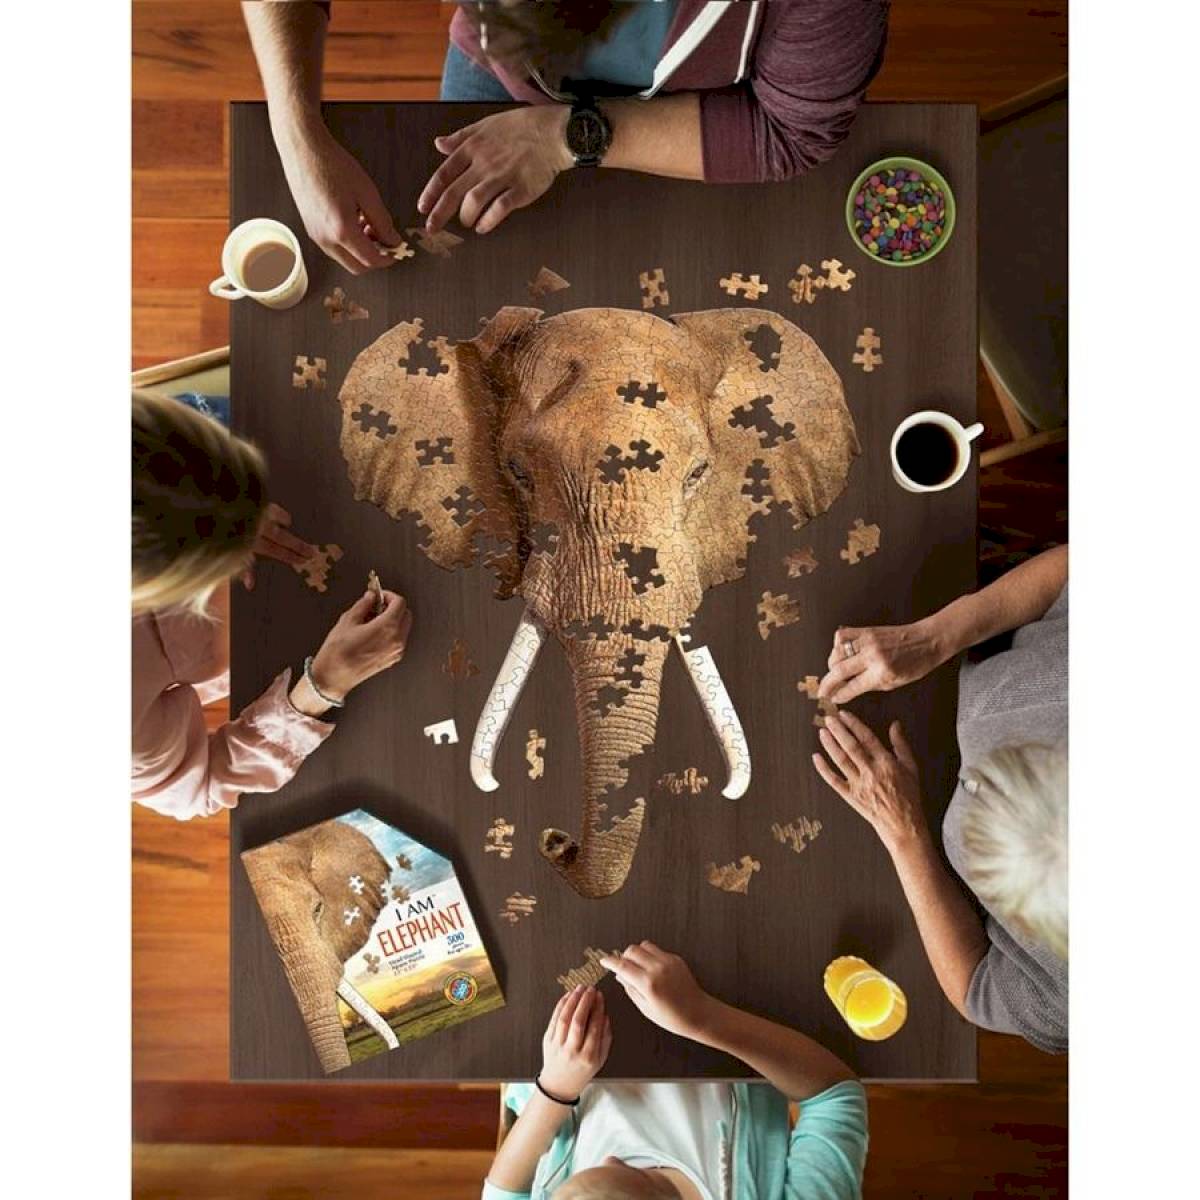 Puzzle I am Elephant 300 pièces